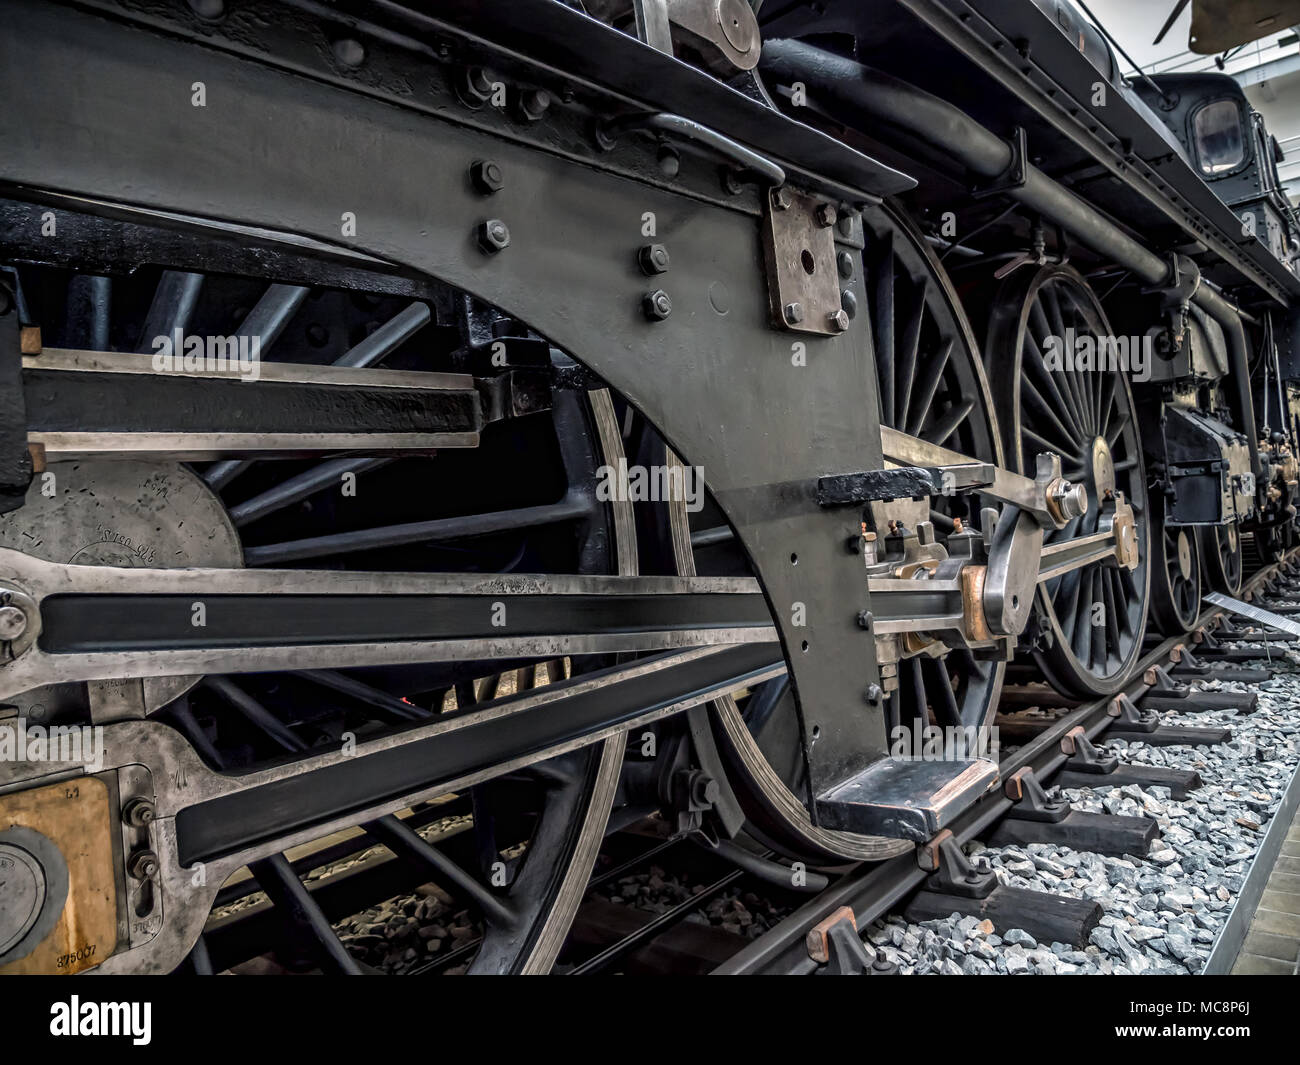 Praga, Repubblica Ceca - 8 Marzo 2017: locomotiva a vapore nel Museo Tecnico Nazionale di Praga, sede storica presenta mezzi di trasporto Foto Stock